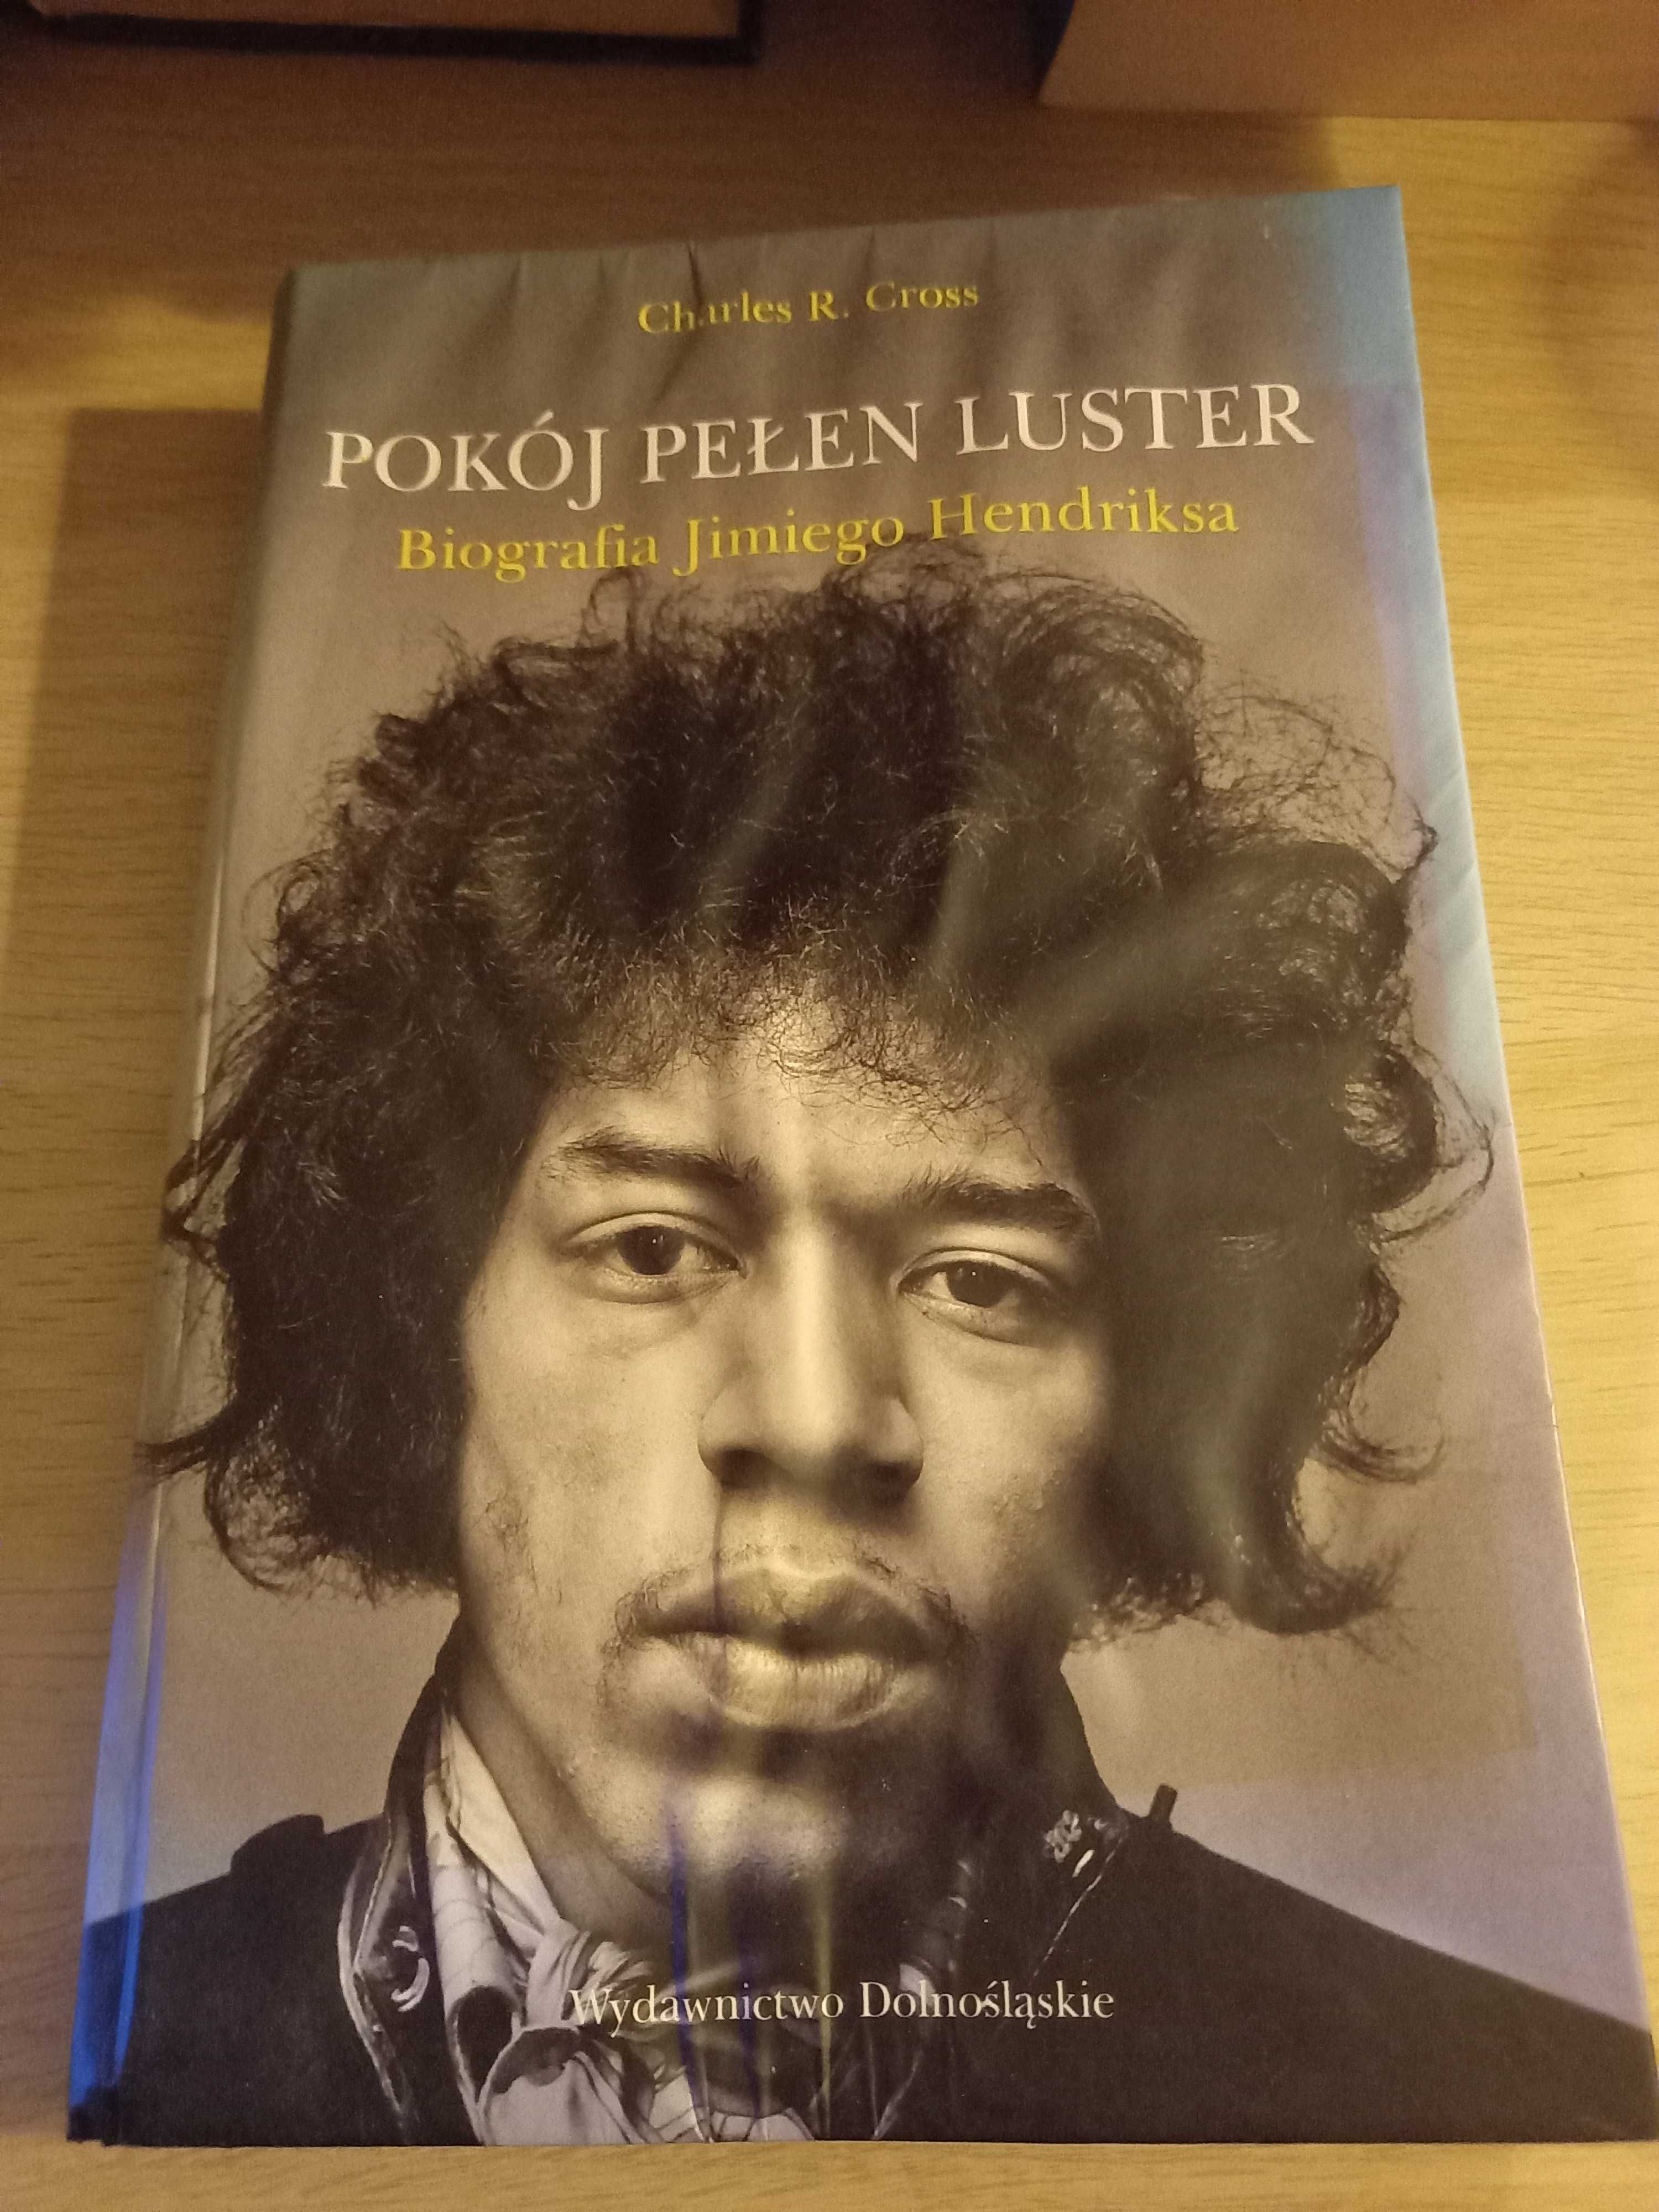 Jimmy Hendrix - autobiografia/biografia